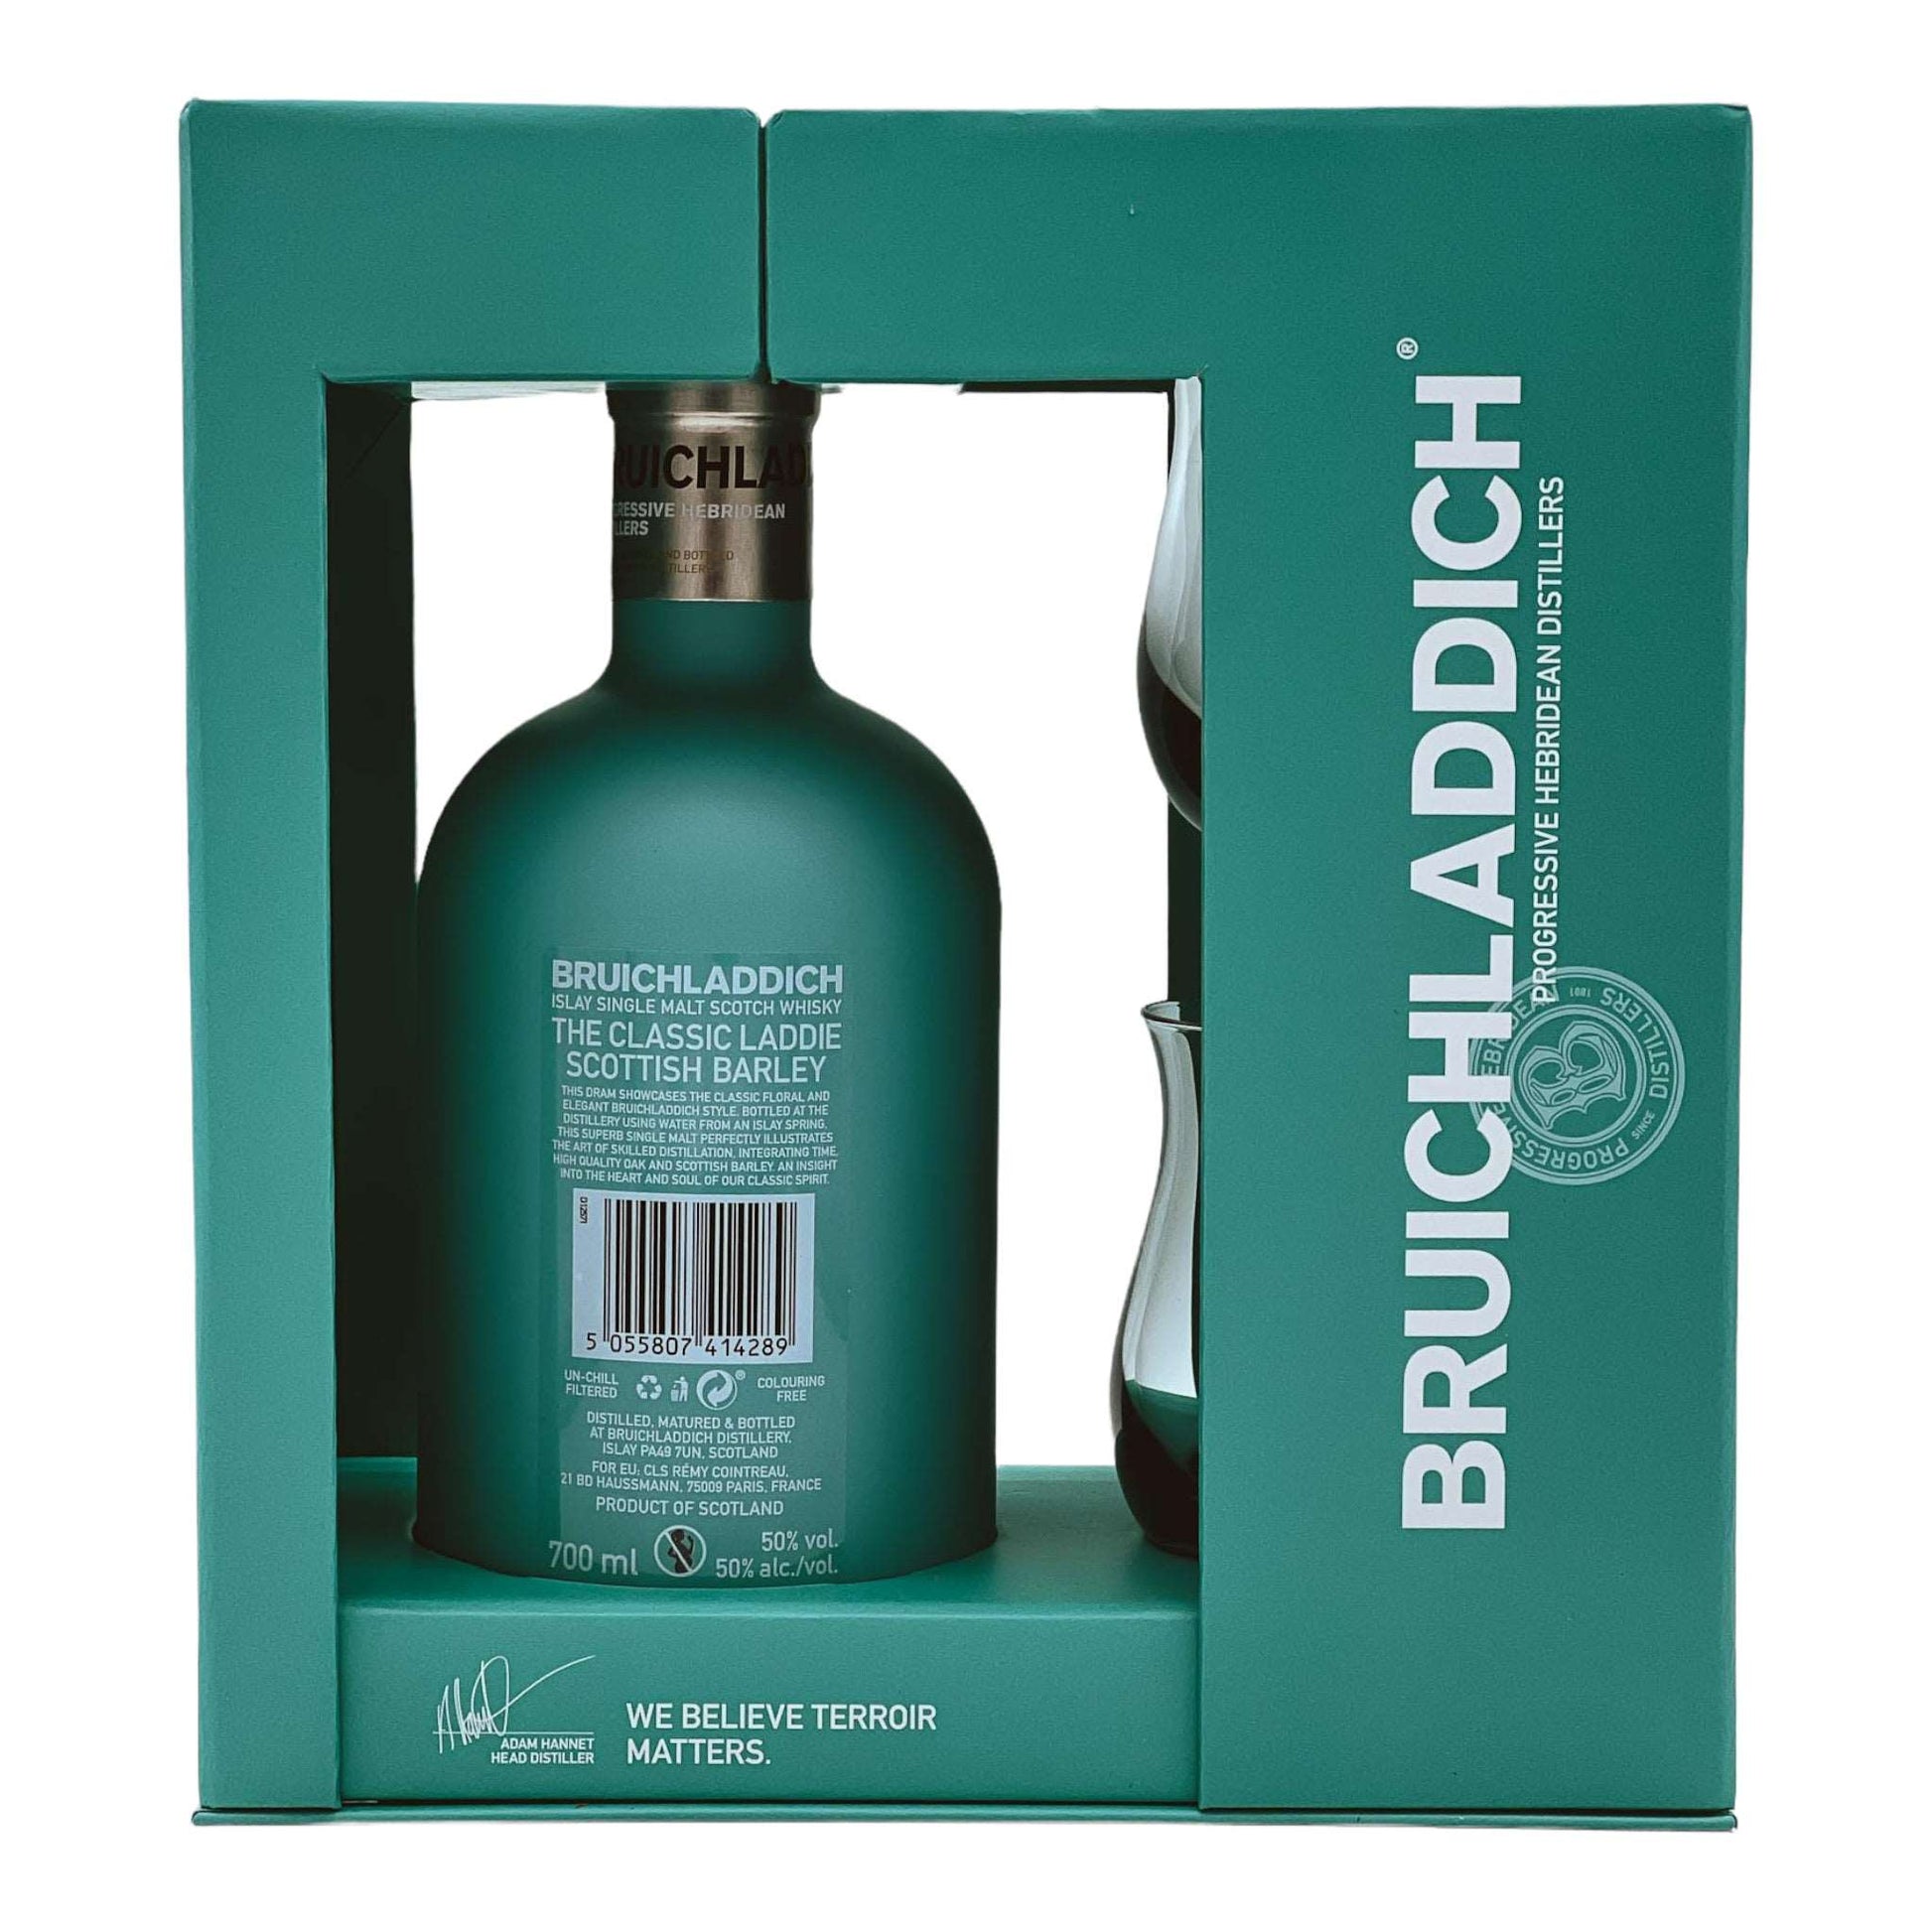 Bruichladdich | The Classic Laddie | Geschenkset mit 2 Gläsern | 0,7l | 50%GET A BOTTLE